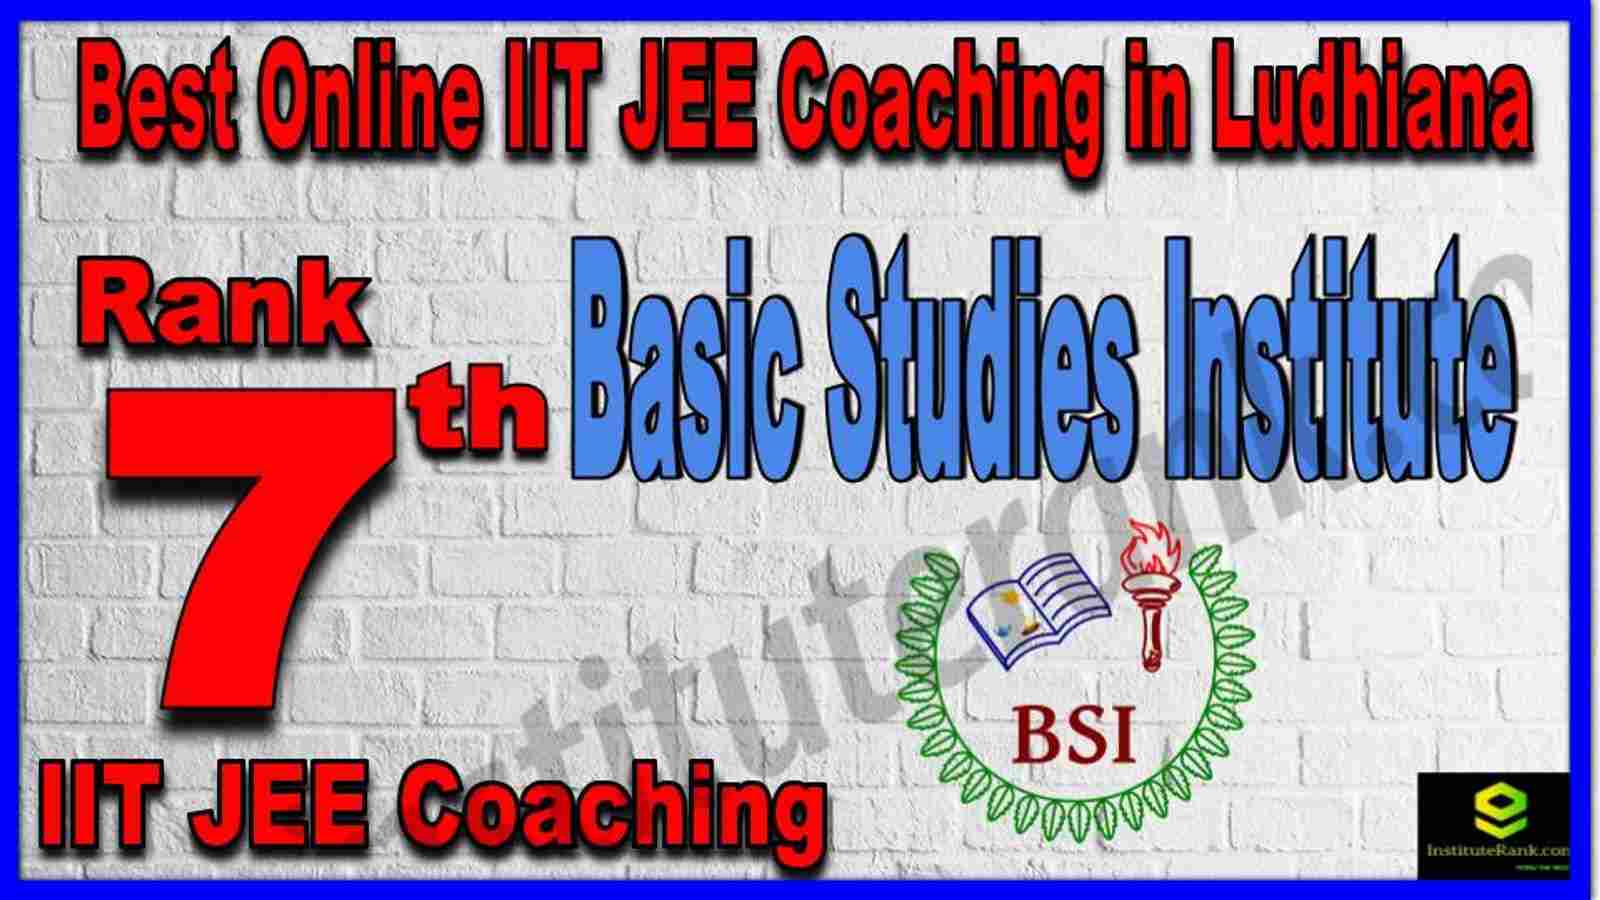 Rank 7th Best Online IIT JEE Coaching in Ludhiana